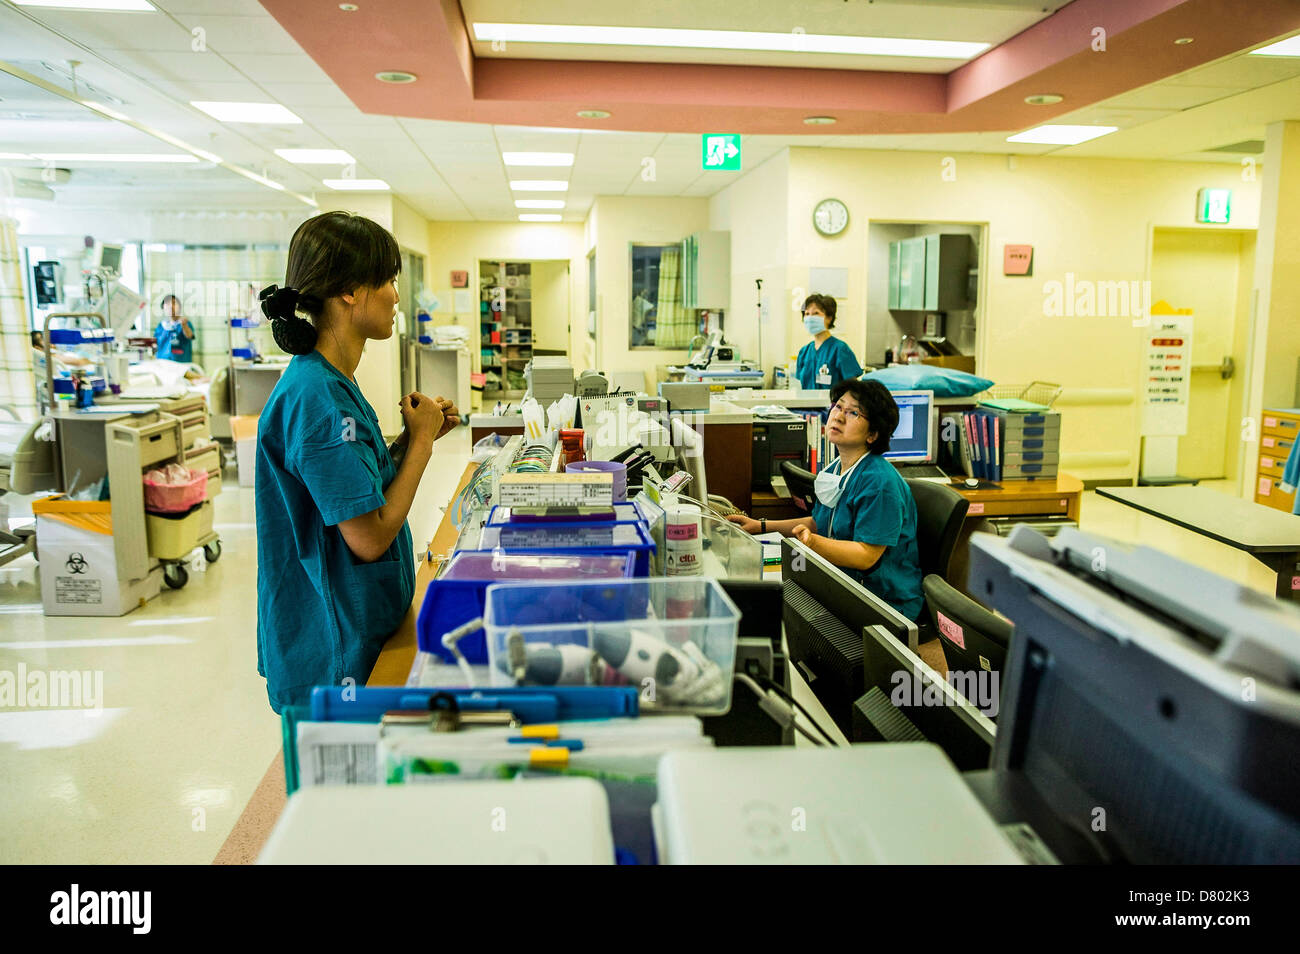 Les infirmières communiquent entre eux au sujet des fournitures médicales au cours de l'aire d'accueil dans une salle de soins intensifs. Banque D'Images